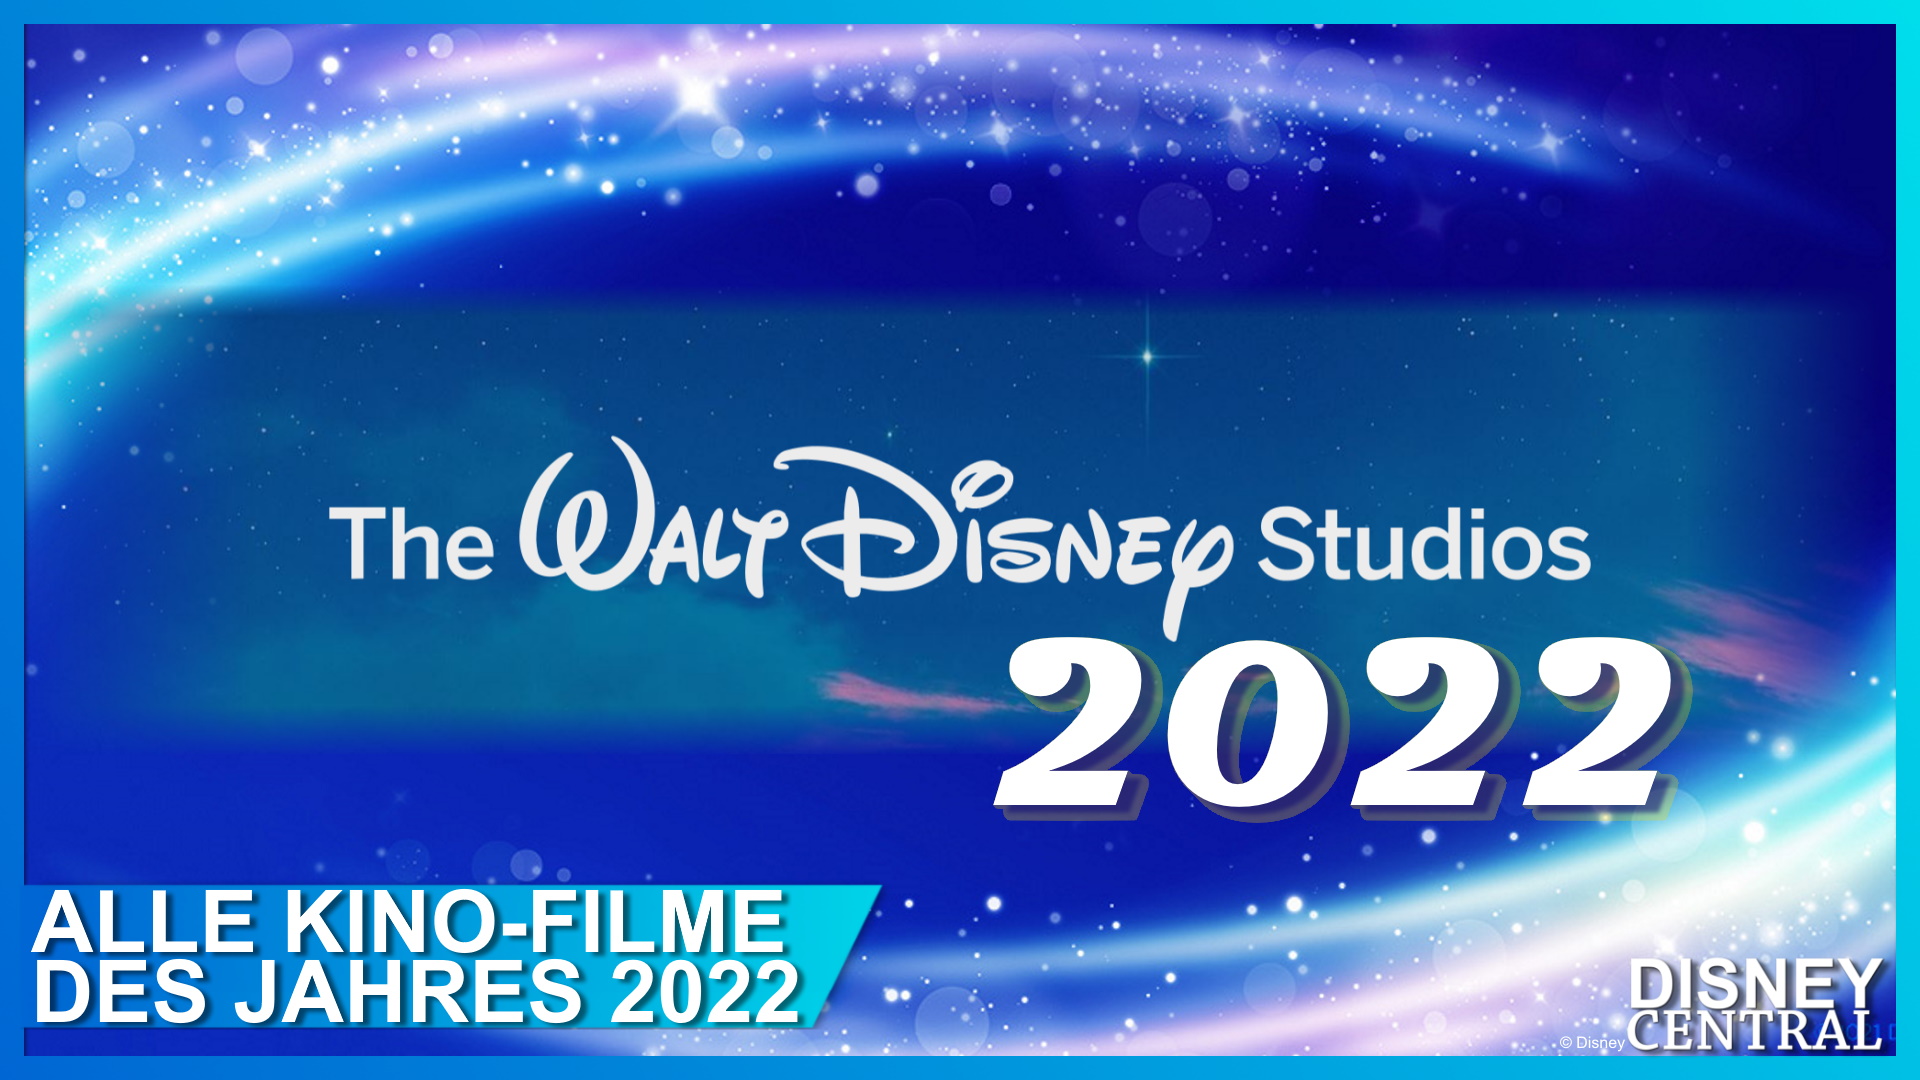 Disney Kino Filme 2022